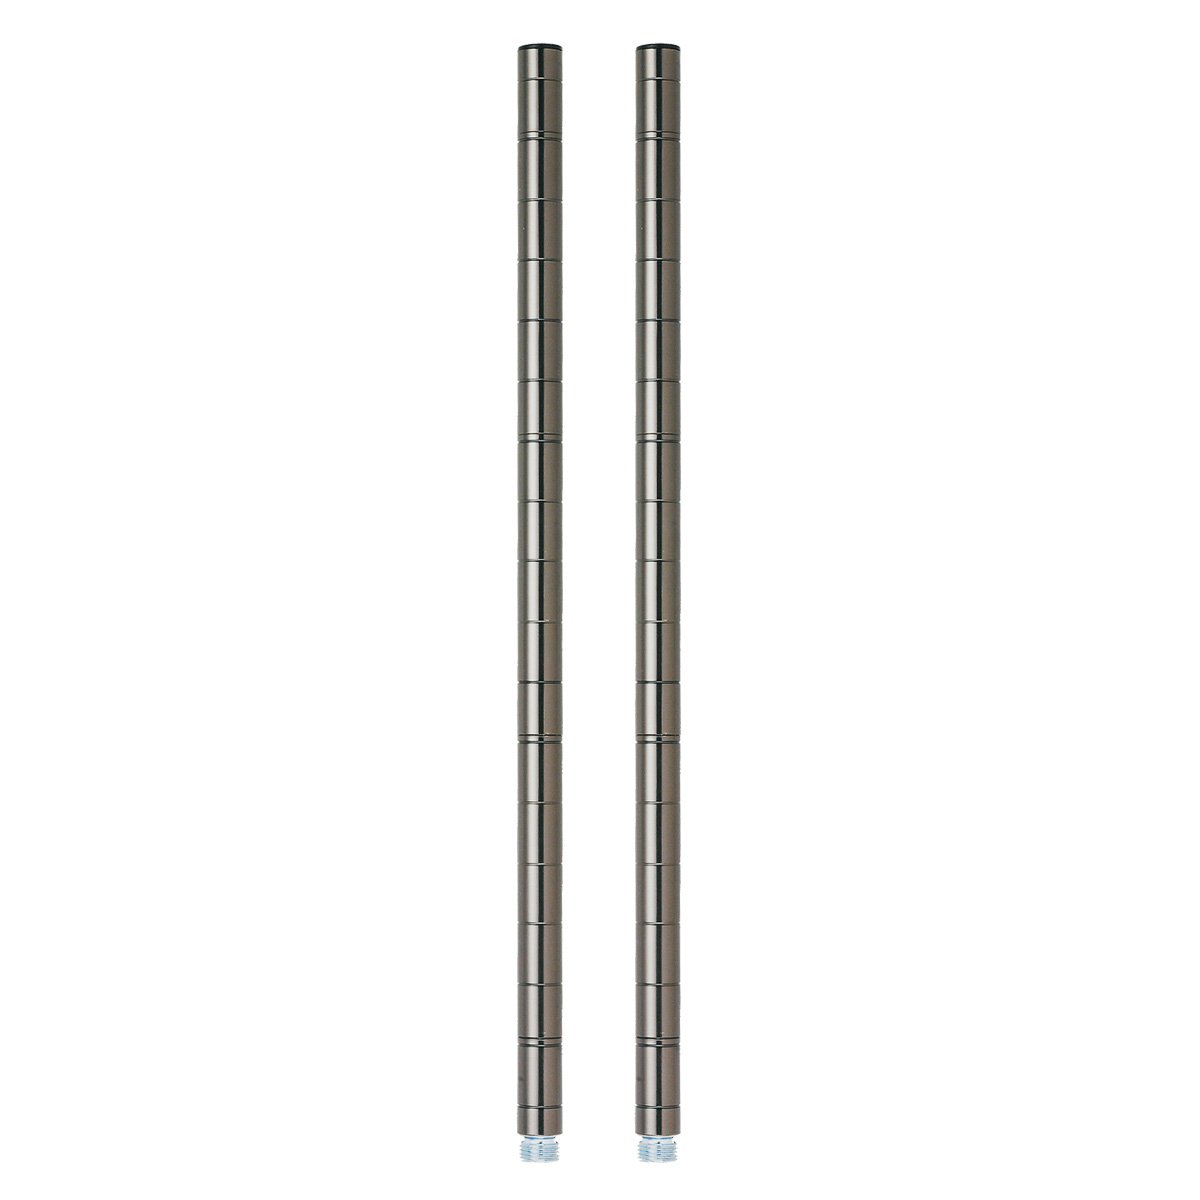 [ドウシシャ] ルミナス ポール径19mm用パーツ ポール 支柱 延長用 46.5cm 2本セット 高さ46.5cm ADD-BN1945 ブラックニッケルシリーズ